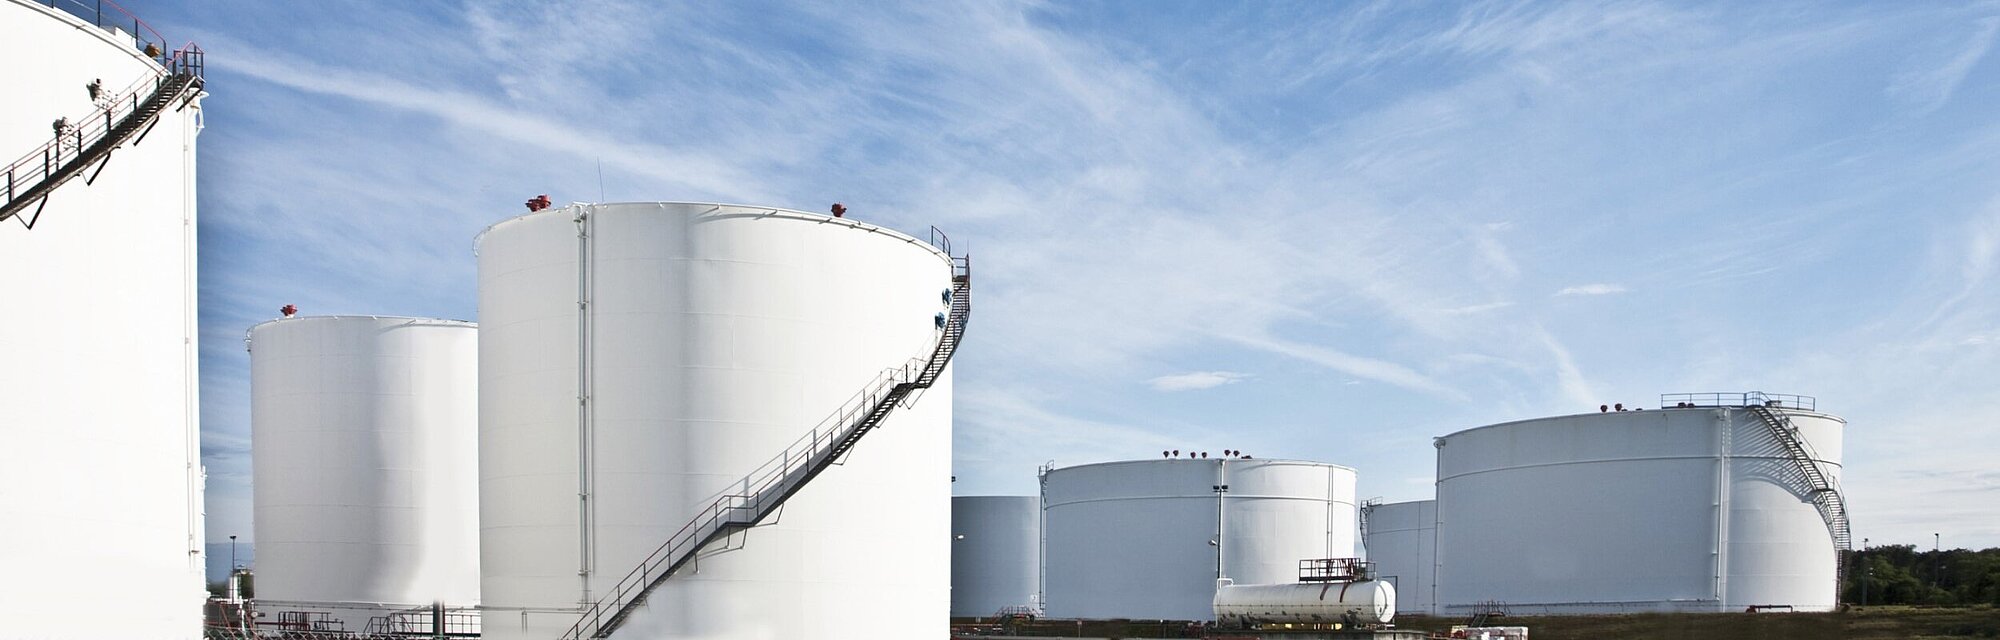 Absicherungen von Tanklagern für Raffinerien und Chemieanlagen